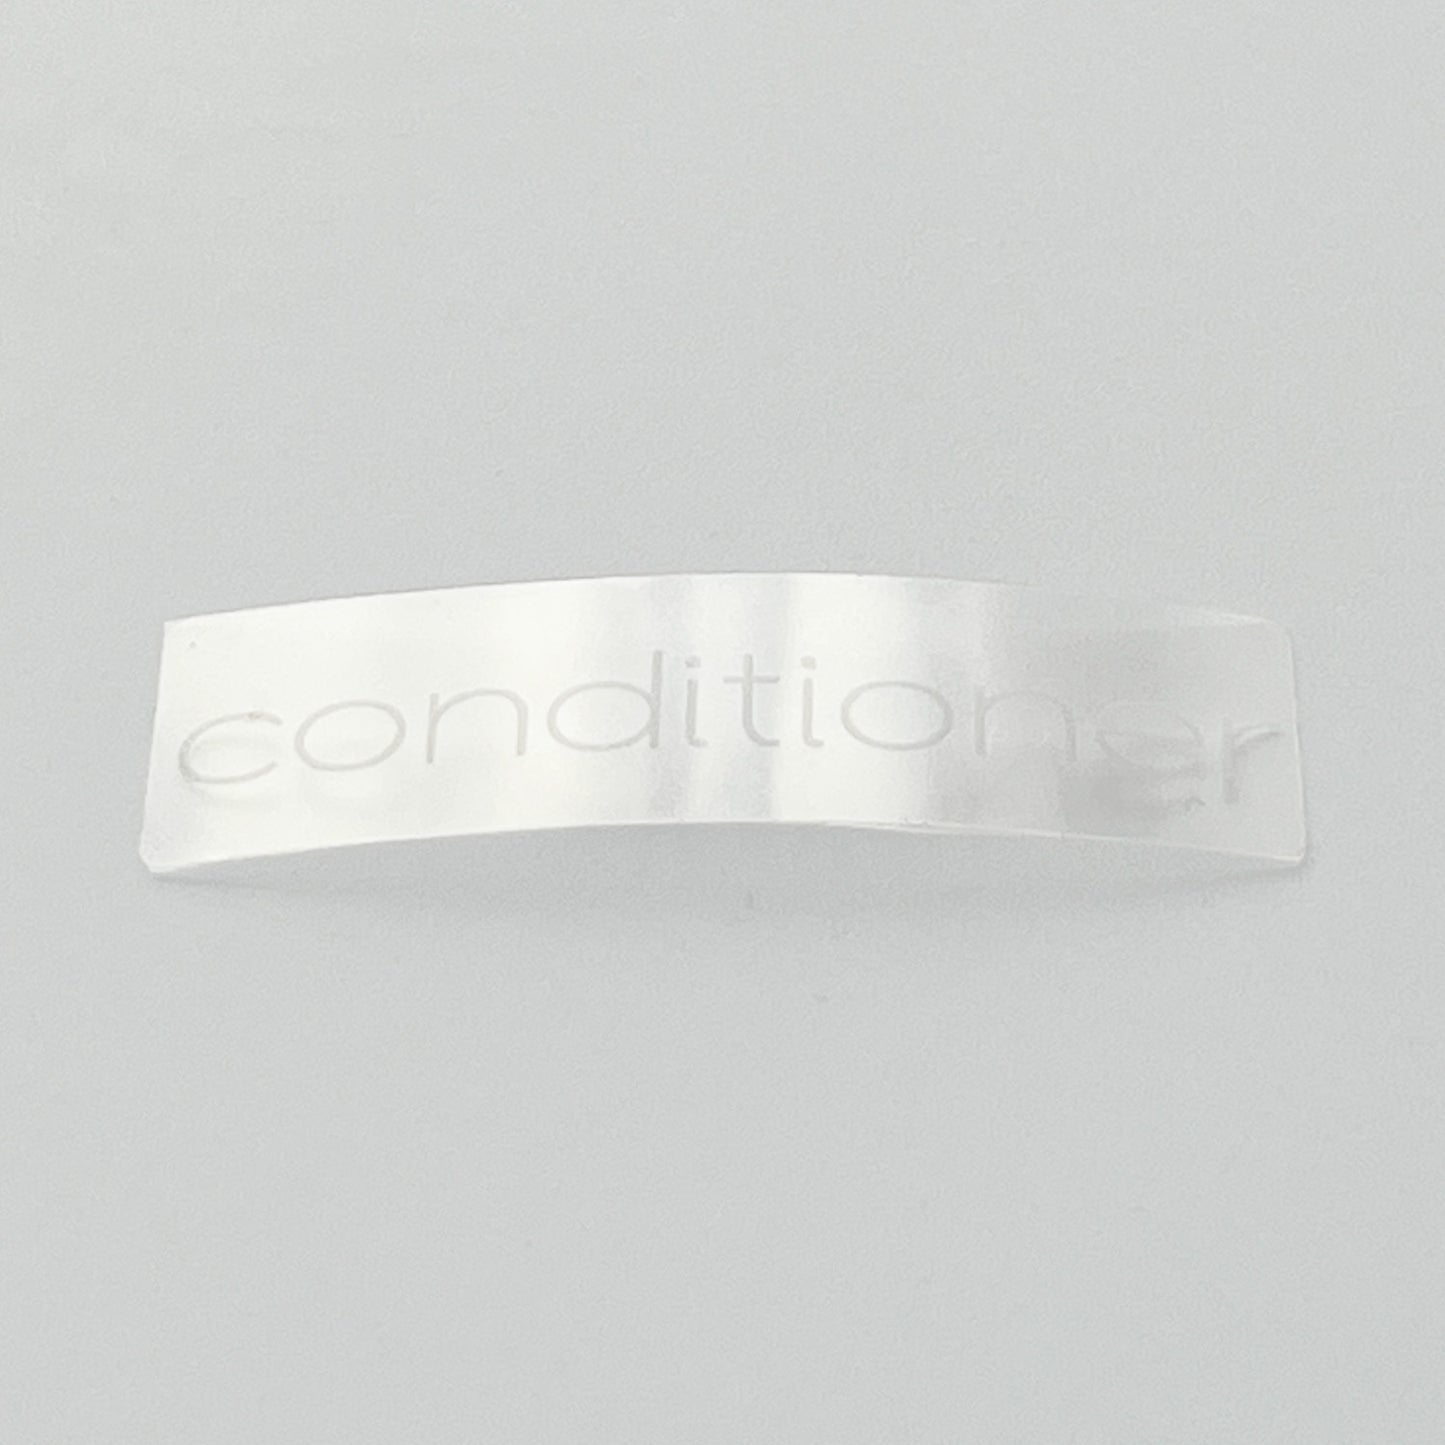 Conditioner | Label